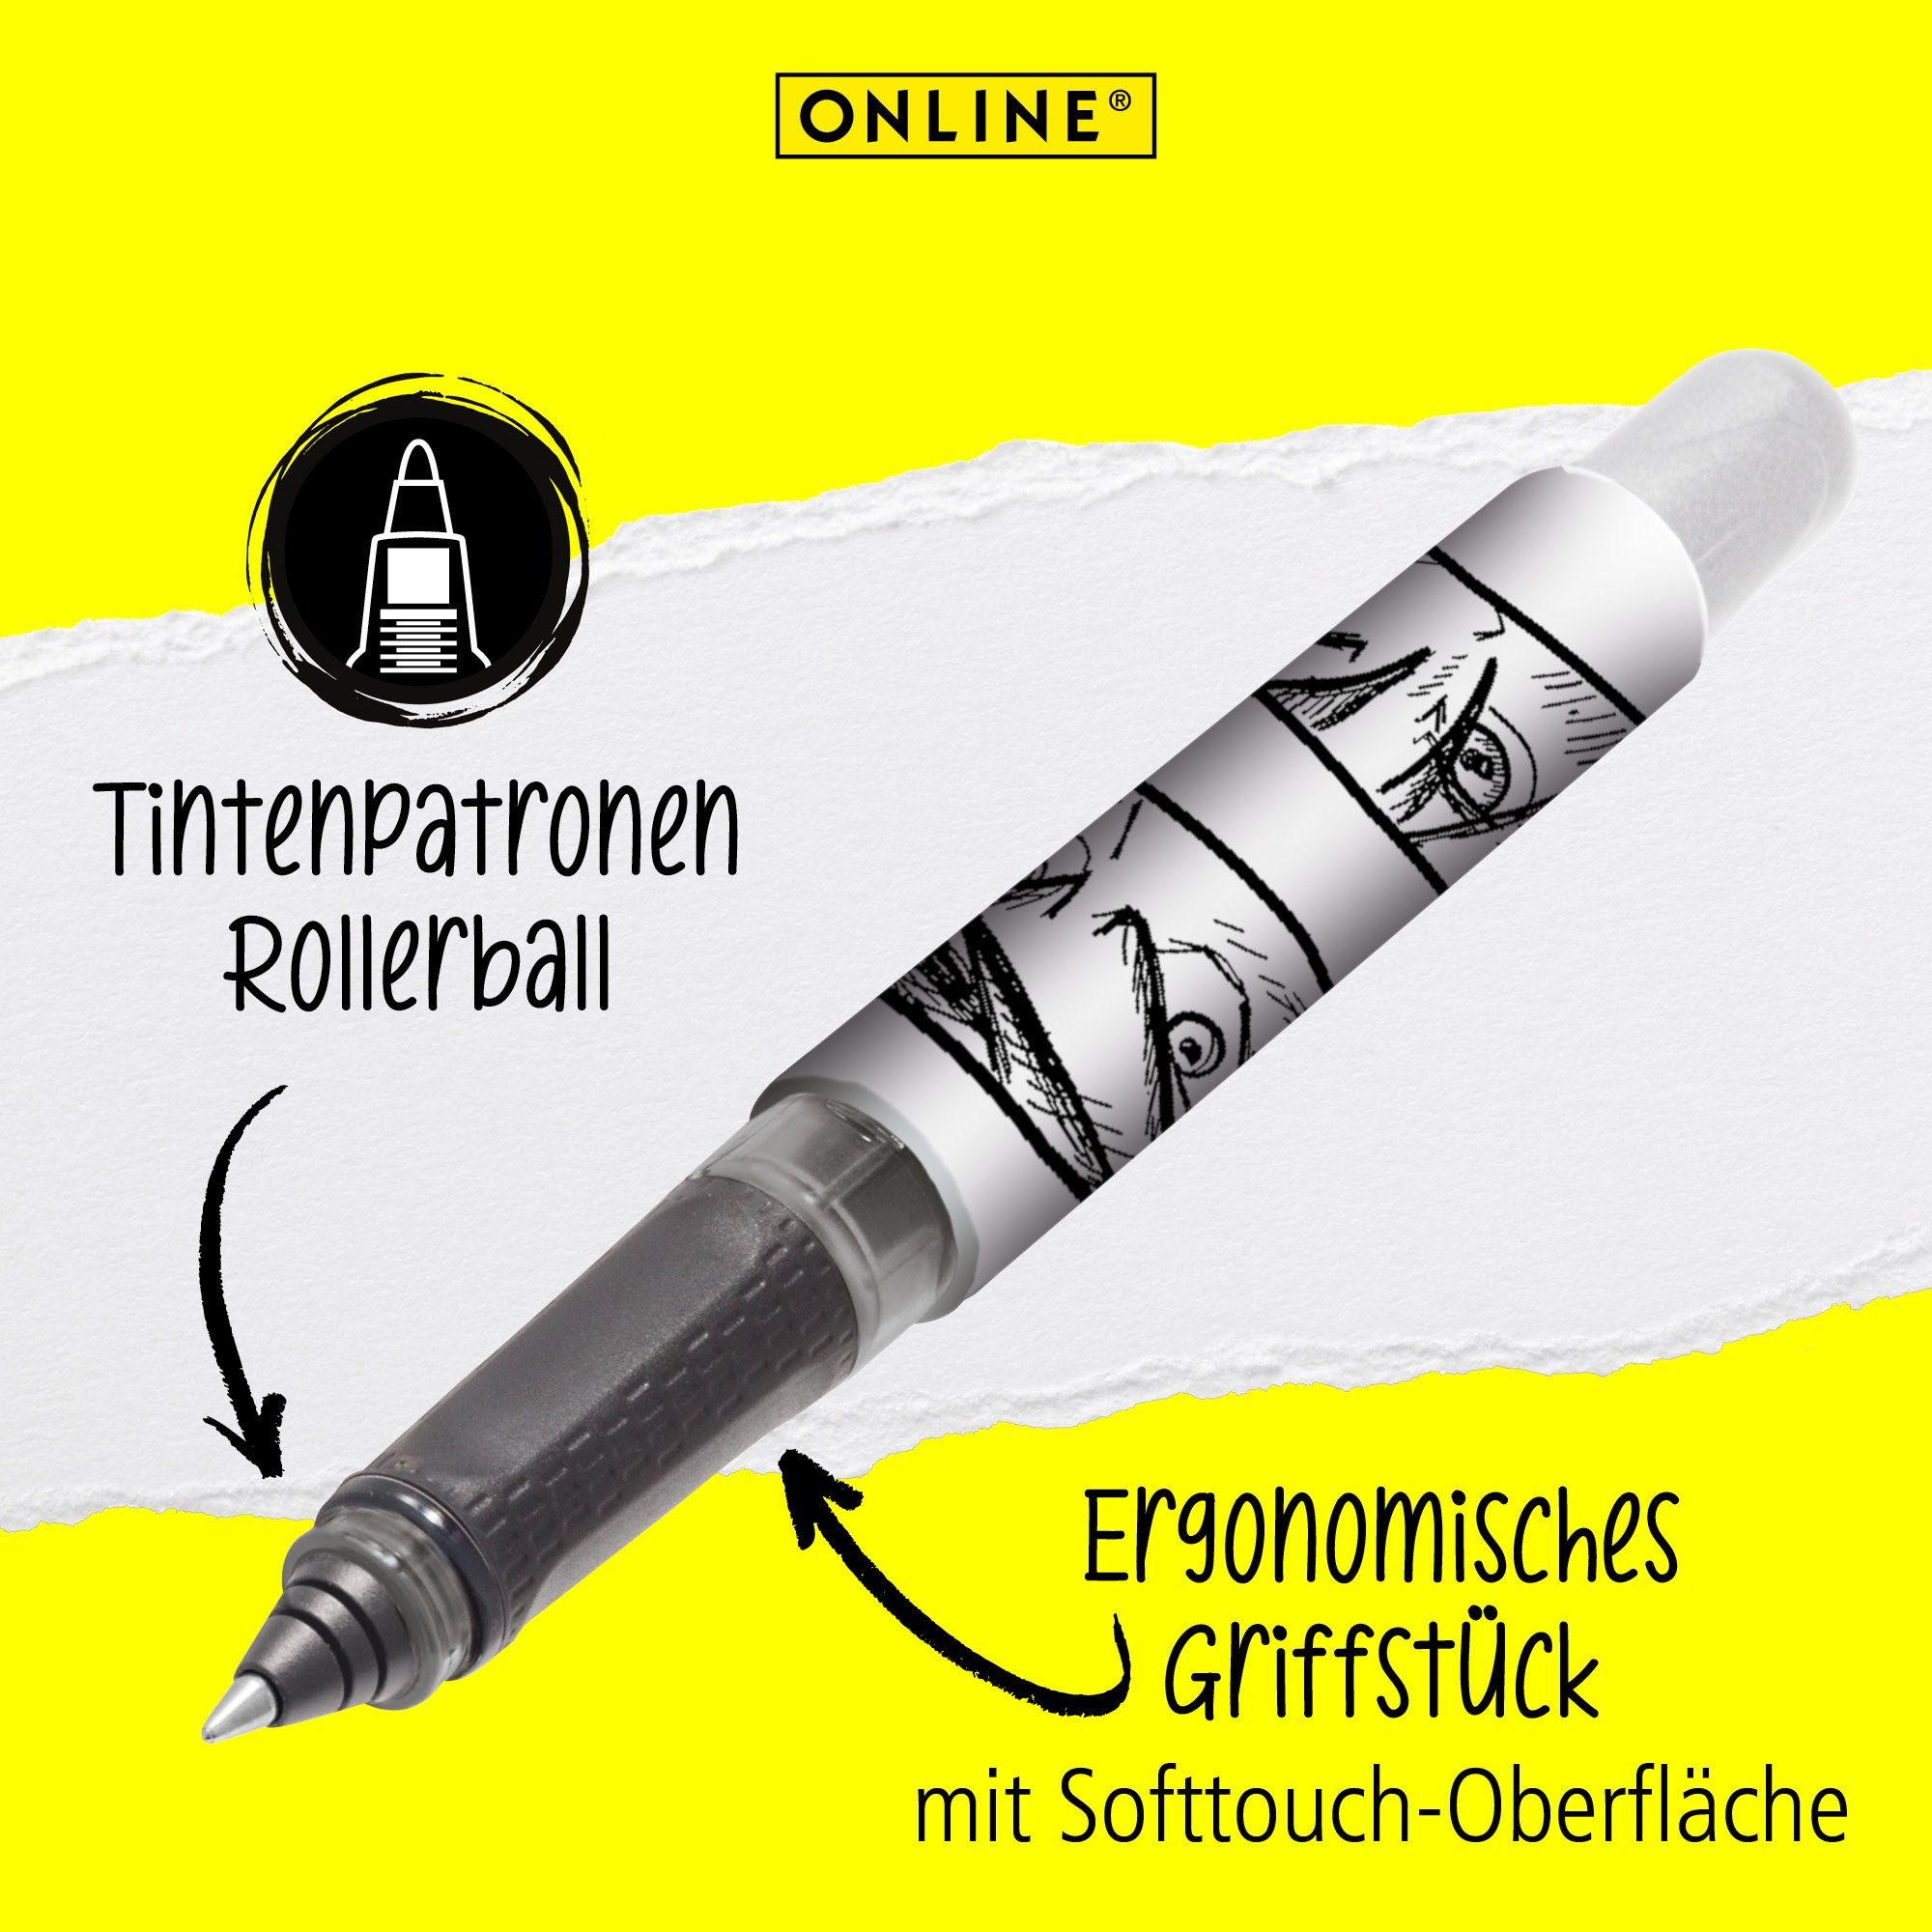 Online Pen in Deutschland ergonomisch, College für Tintenroller die Tintenpatronen-Rollerball, Schule, Manga ideal hergestellt